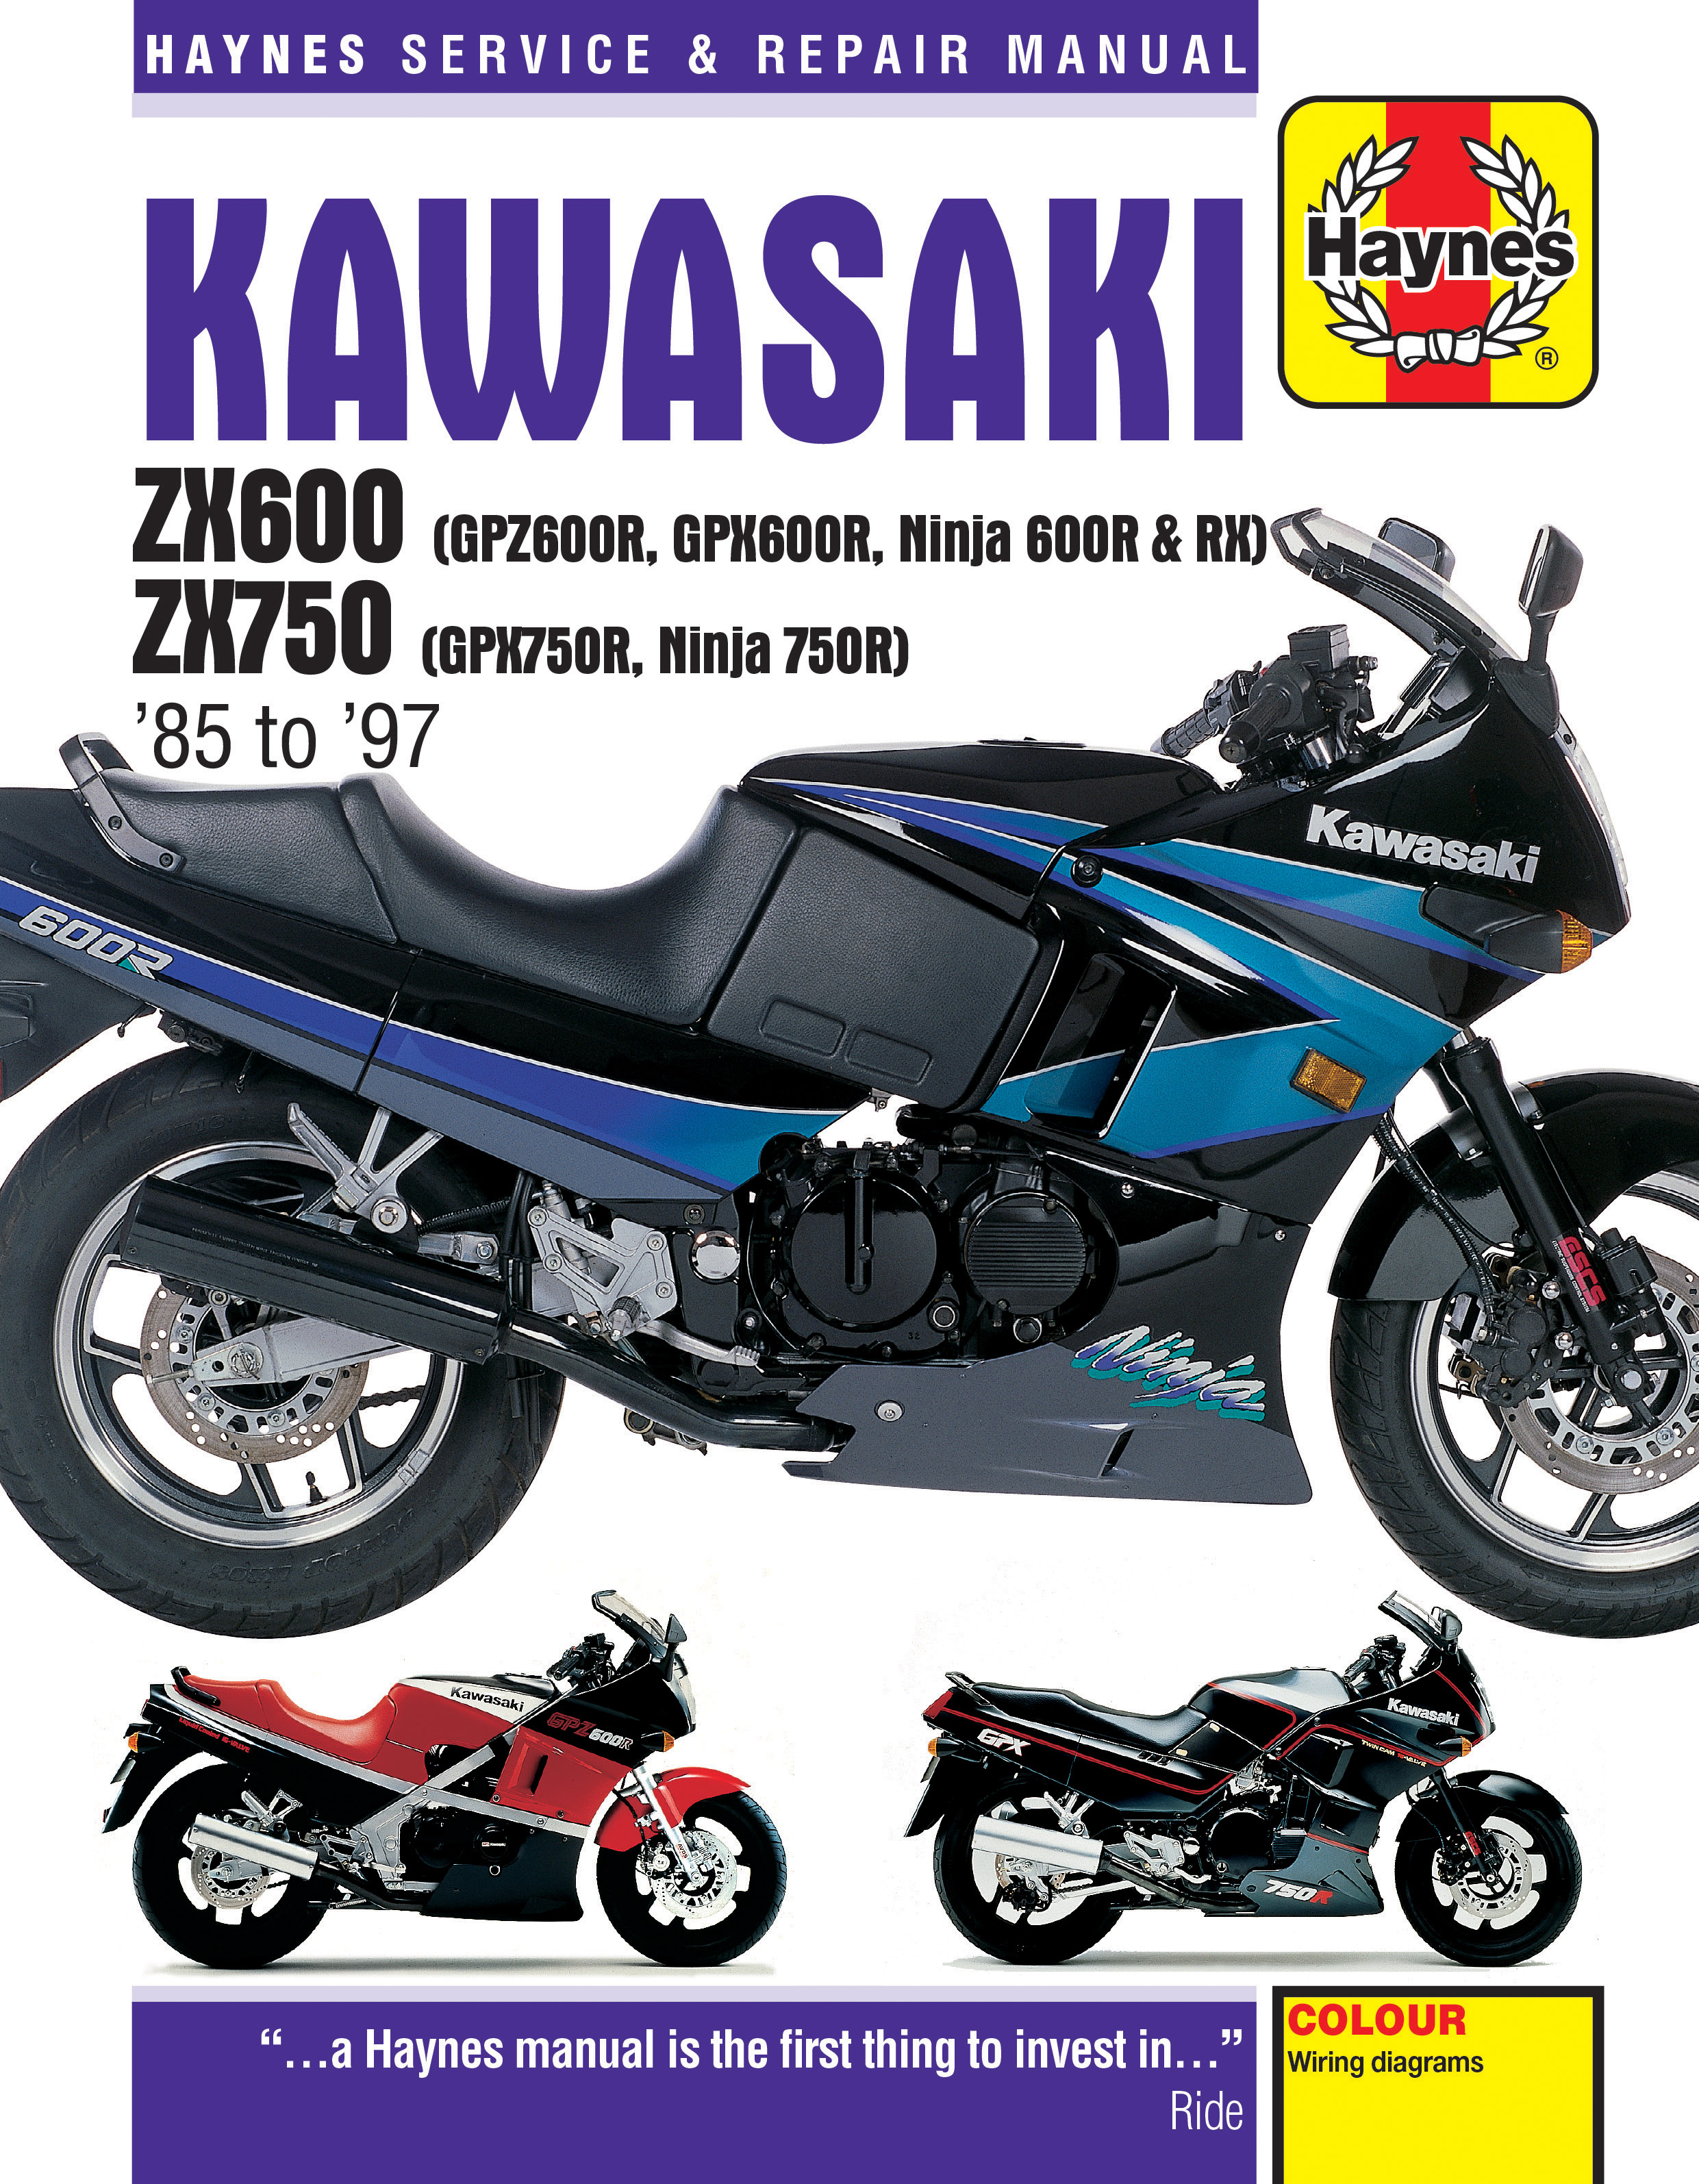 Kawasaki Ninja 600RX Haynes Manuals & Guides